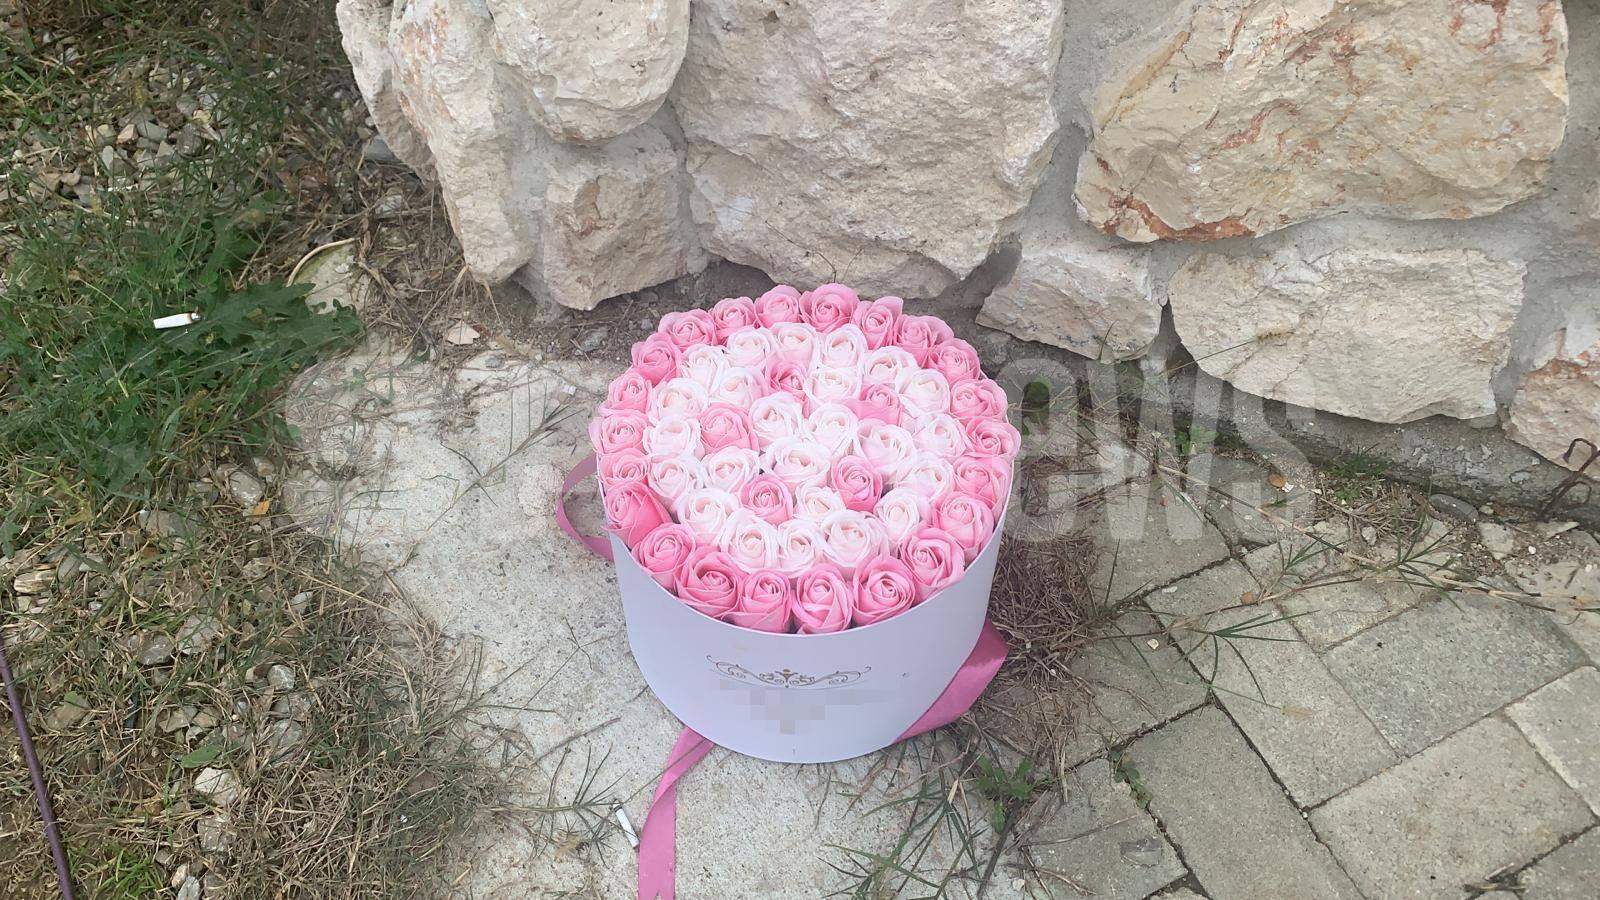 Poarta lui Alex Bodi. Lângă gunoi este un buchet de flori roz.